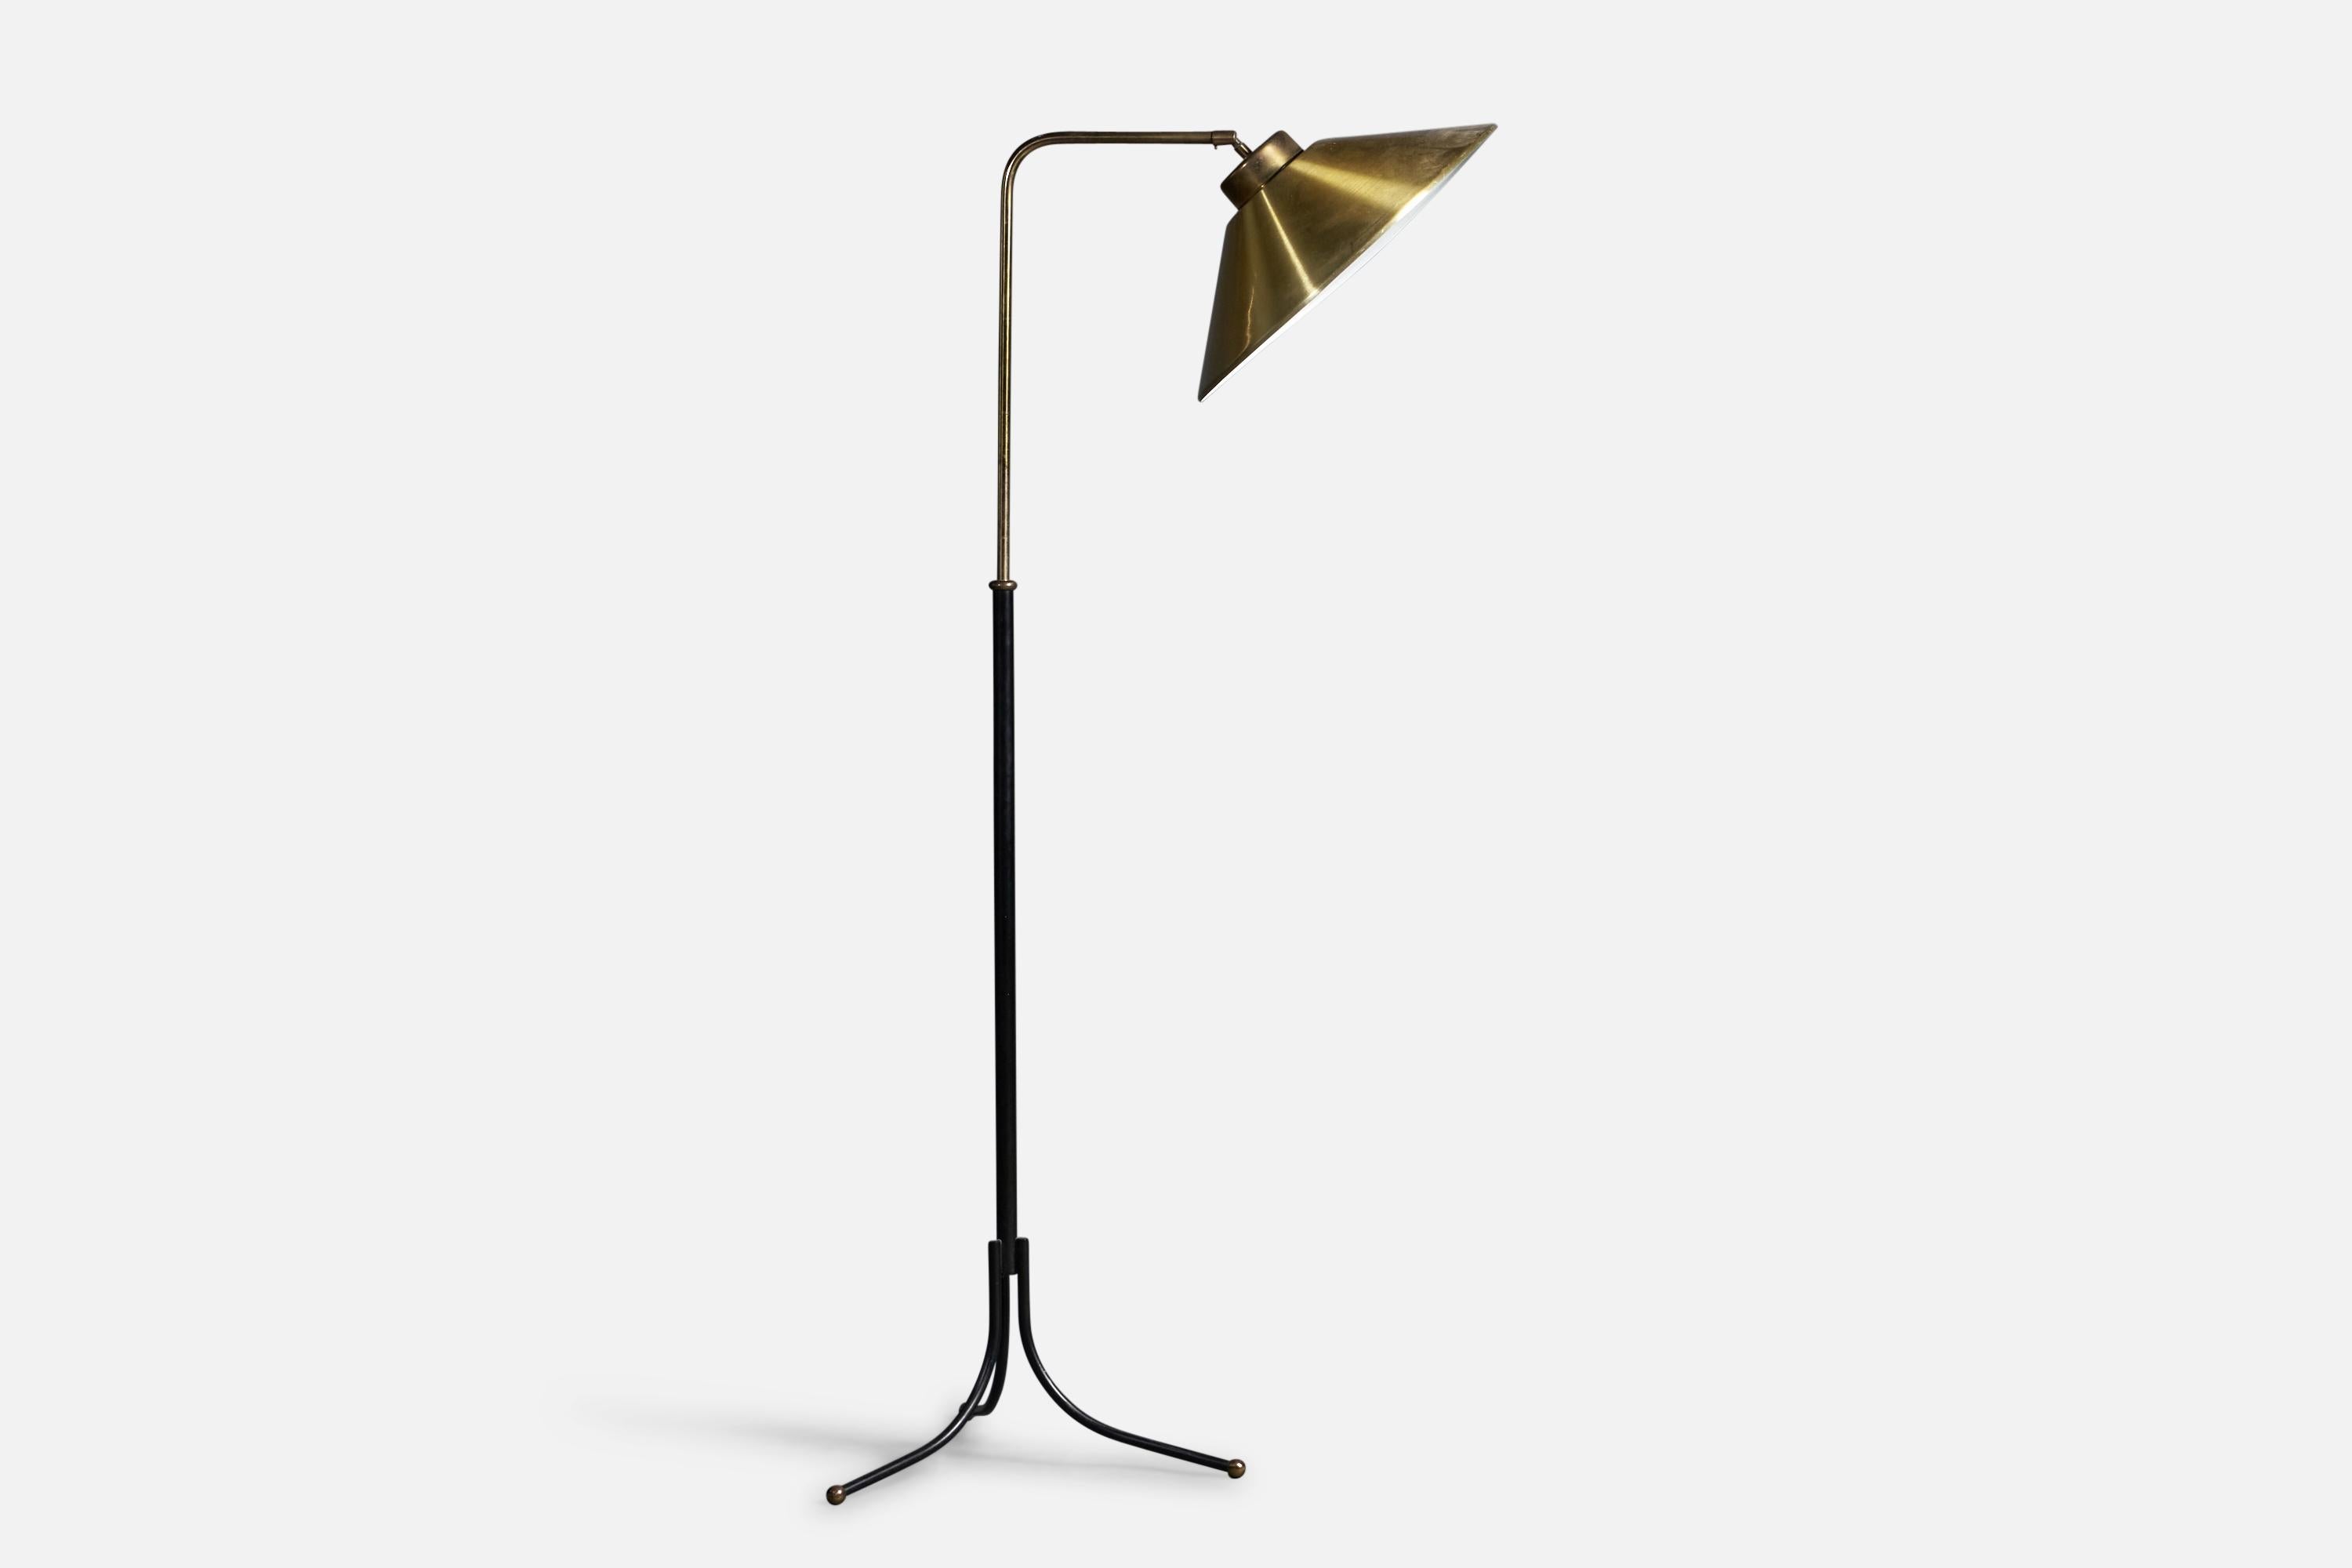 Verstellbare Stehlampe aus Messing und schwarz lackiertem Metall, entworfen und hergestellt von Josef Frank, Schweden, ca. 1950er Jahre

Gesamtabmessungen: 54